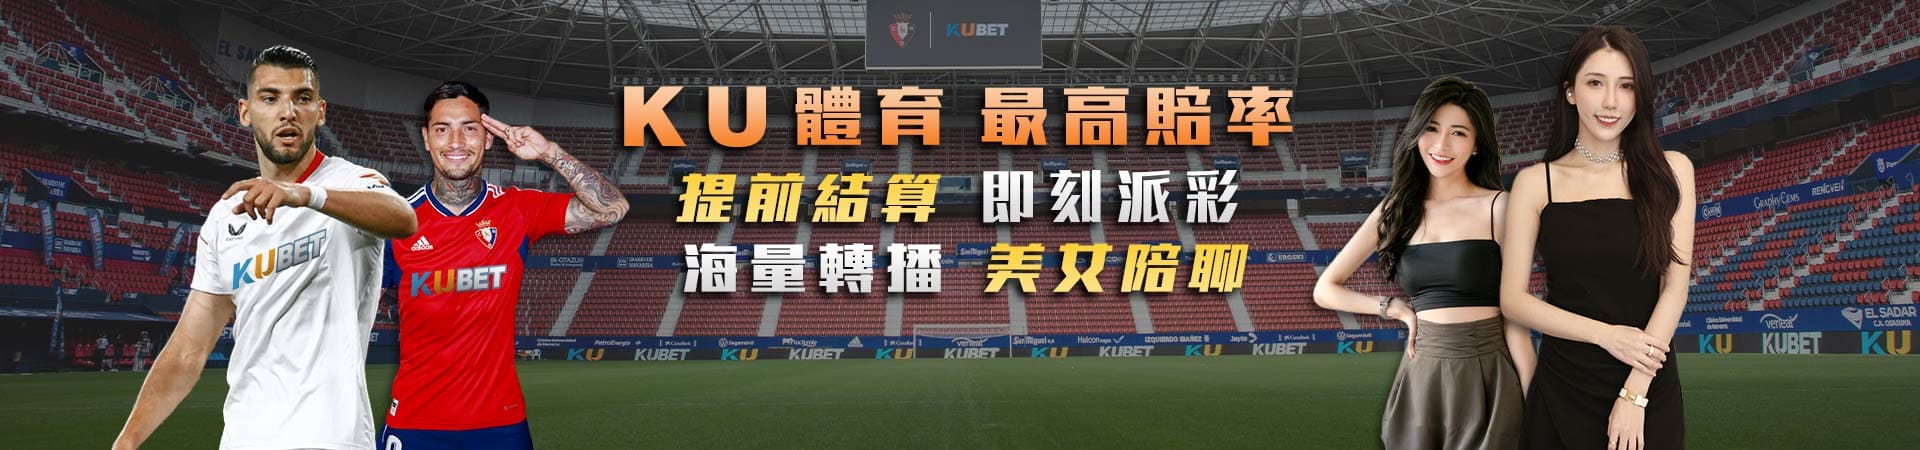 KU台灣運彩球版投注公式重點、球隊與球員的勝率數據分析法